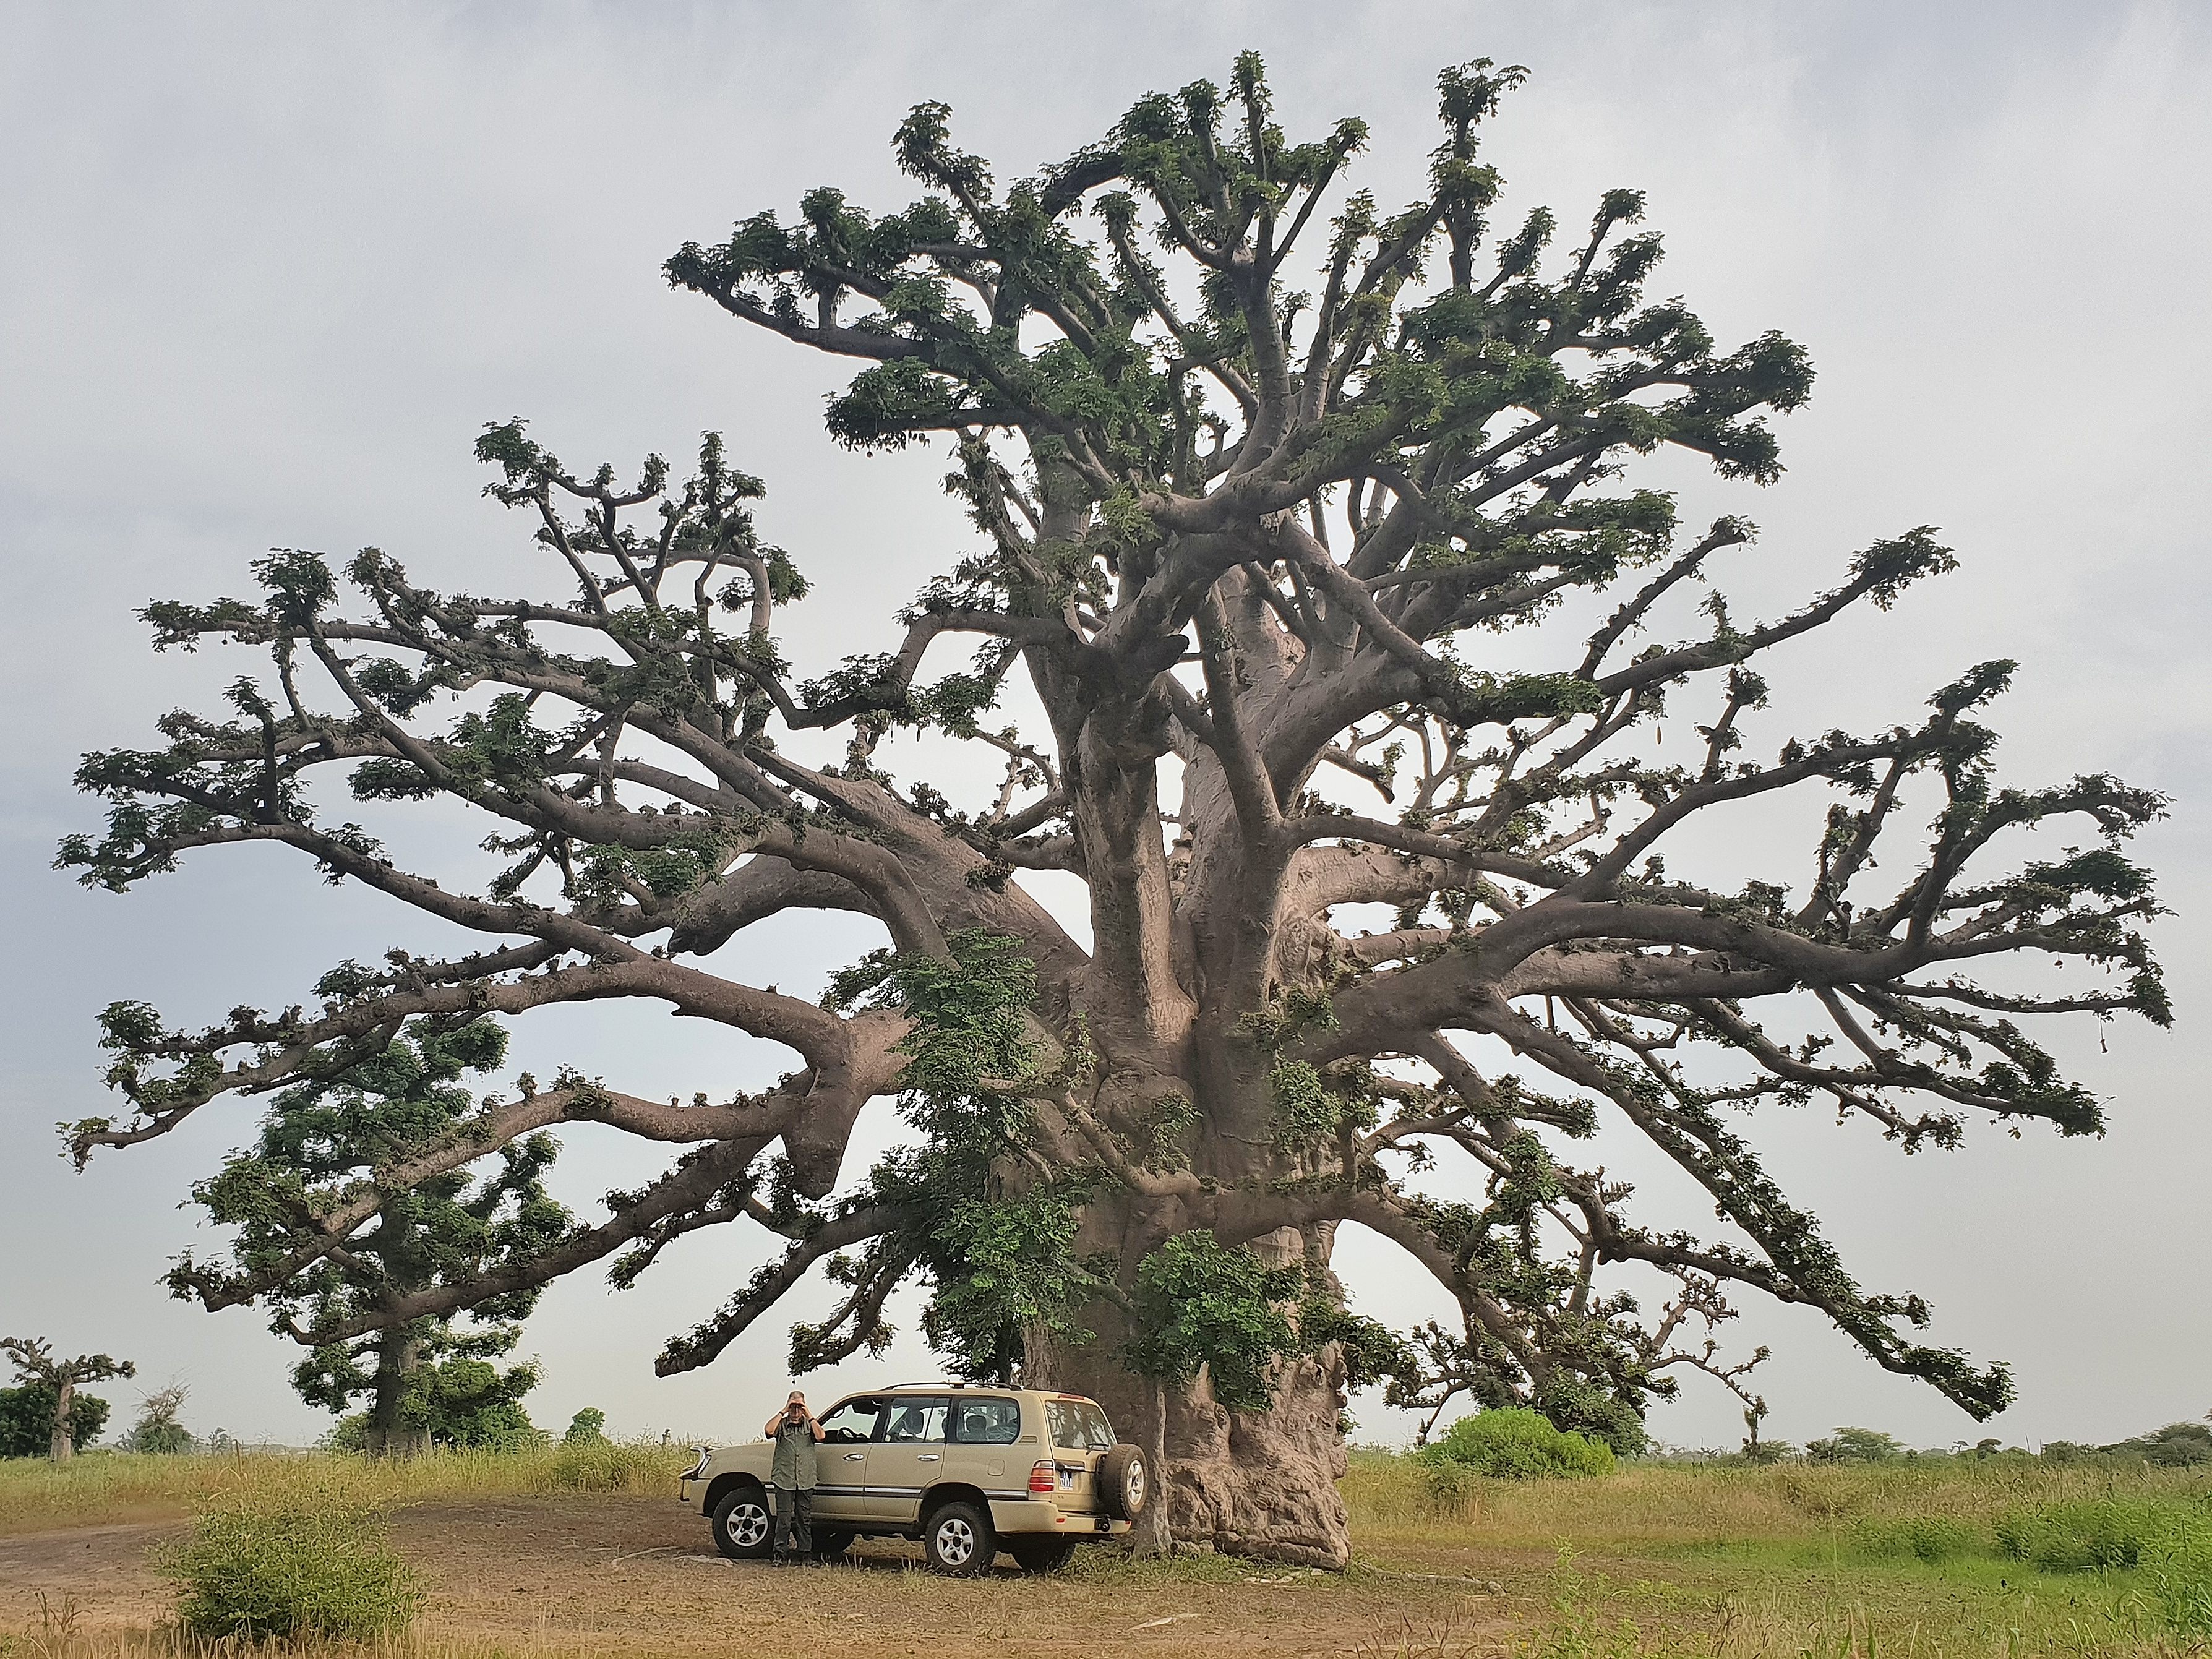 Le photographe photographié. Sous l'un des plus gros Baobabs de la brousse de Somone, Jacques, adossé à sa fidéle Toyota Station-Wagon 2002 photographie une blondine